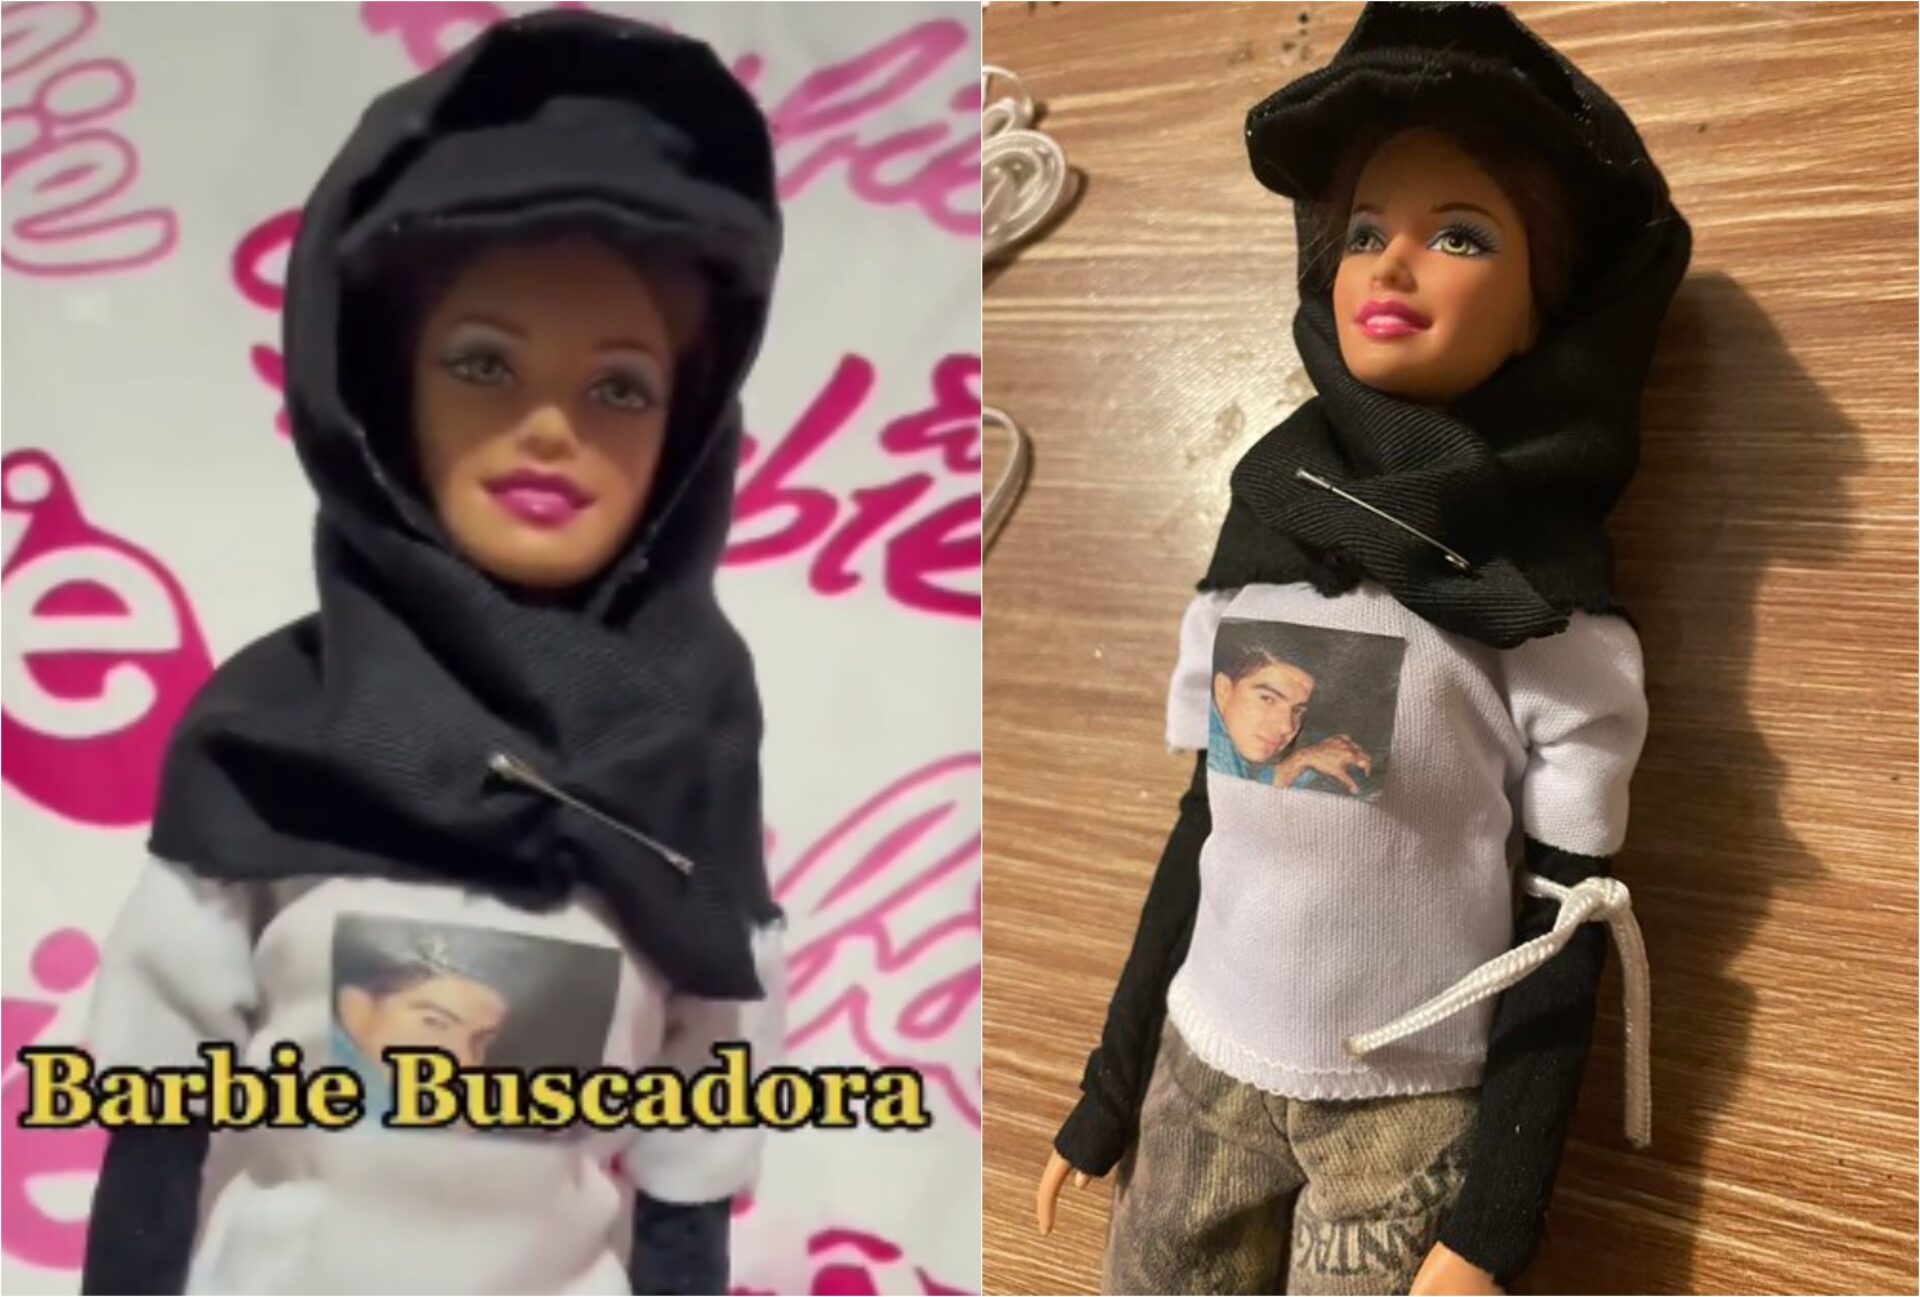 Colectivos rechazan a la ‘Barbie Buscadora’: no normalicemos buscar desaparecidos